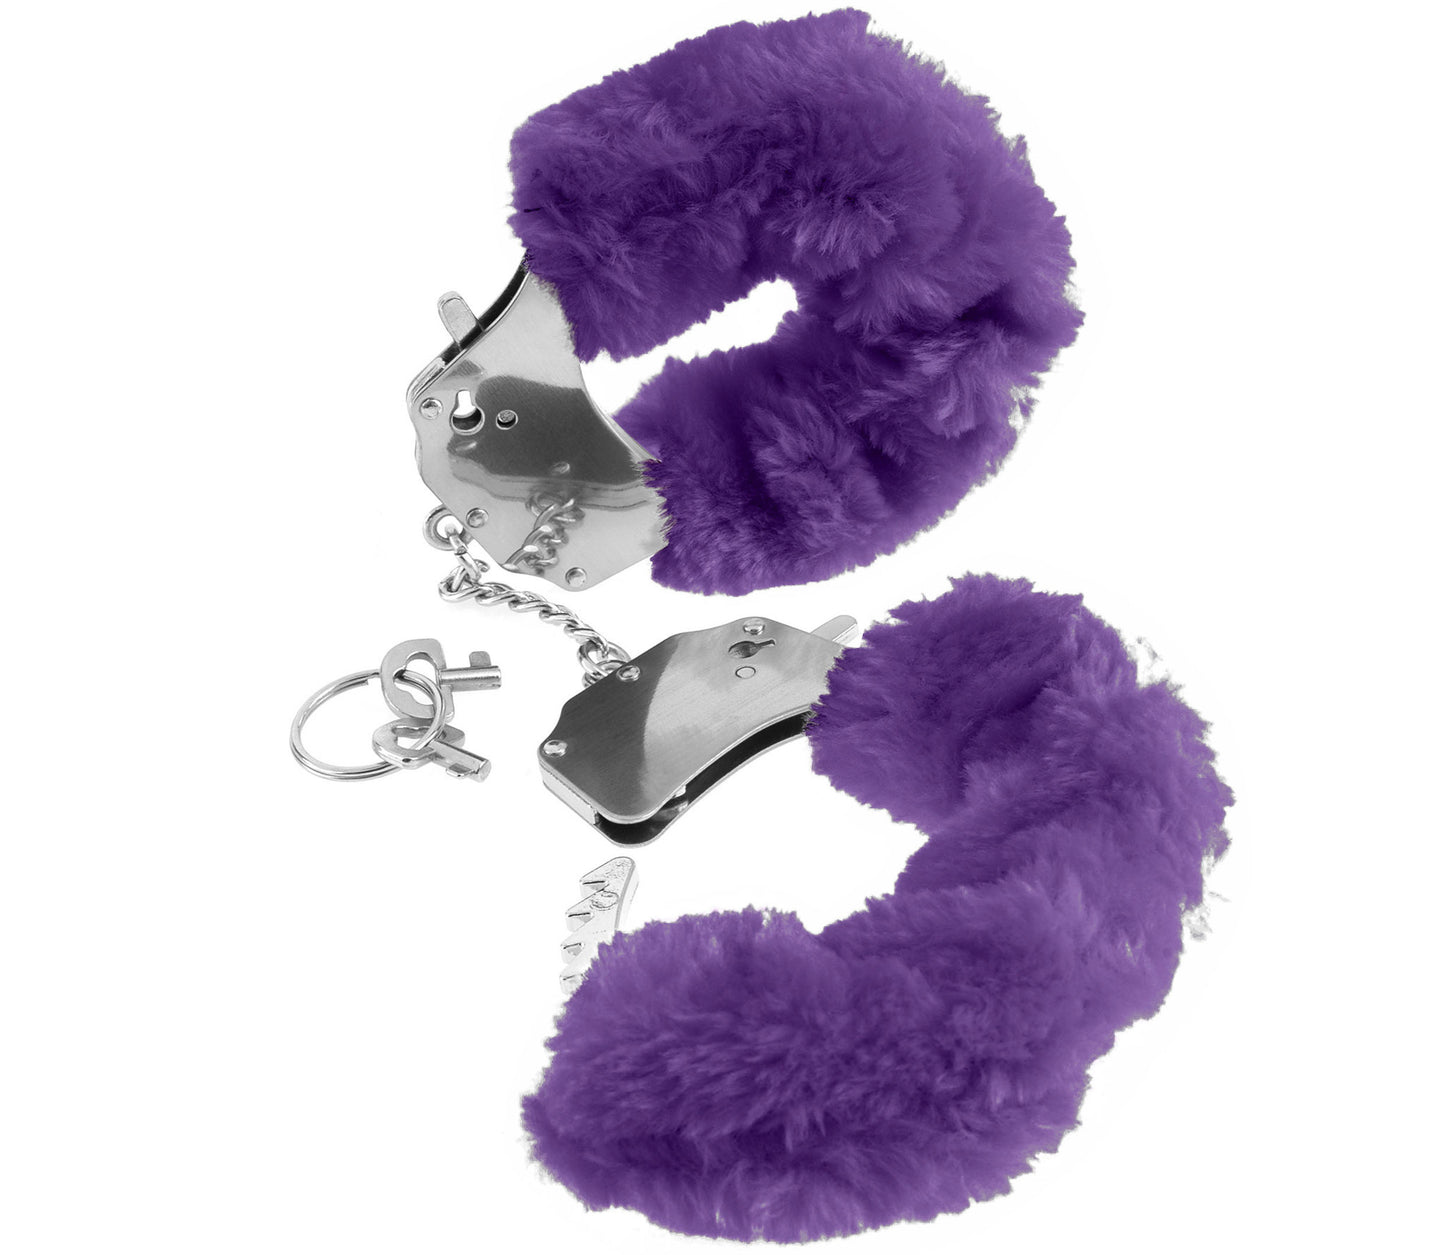 Fetish Fantasy Furry Cuffs Bondage Play Purple - Club X